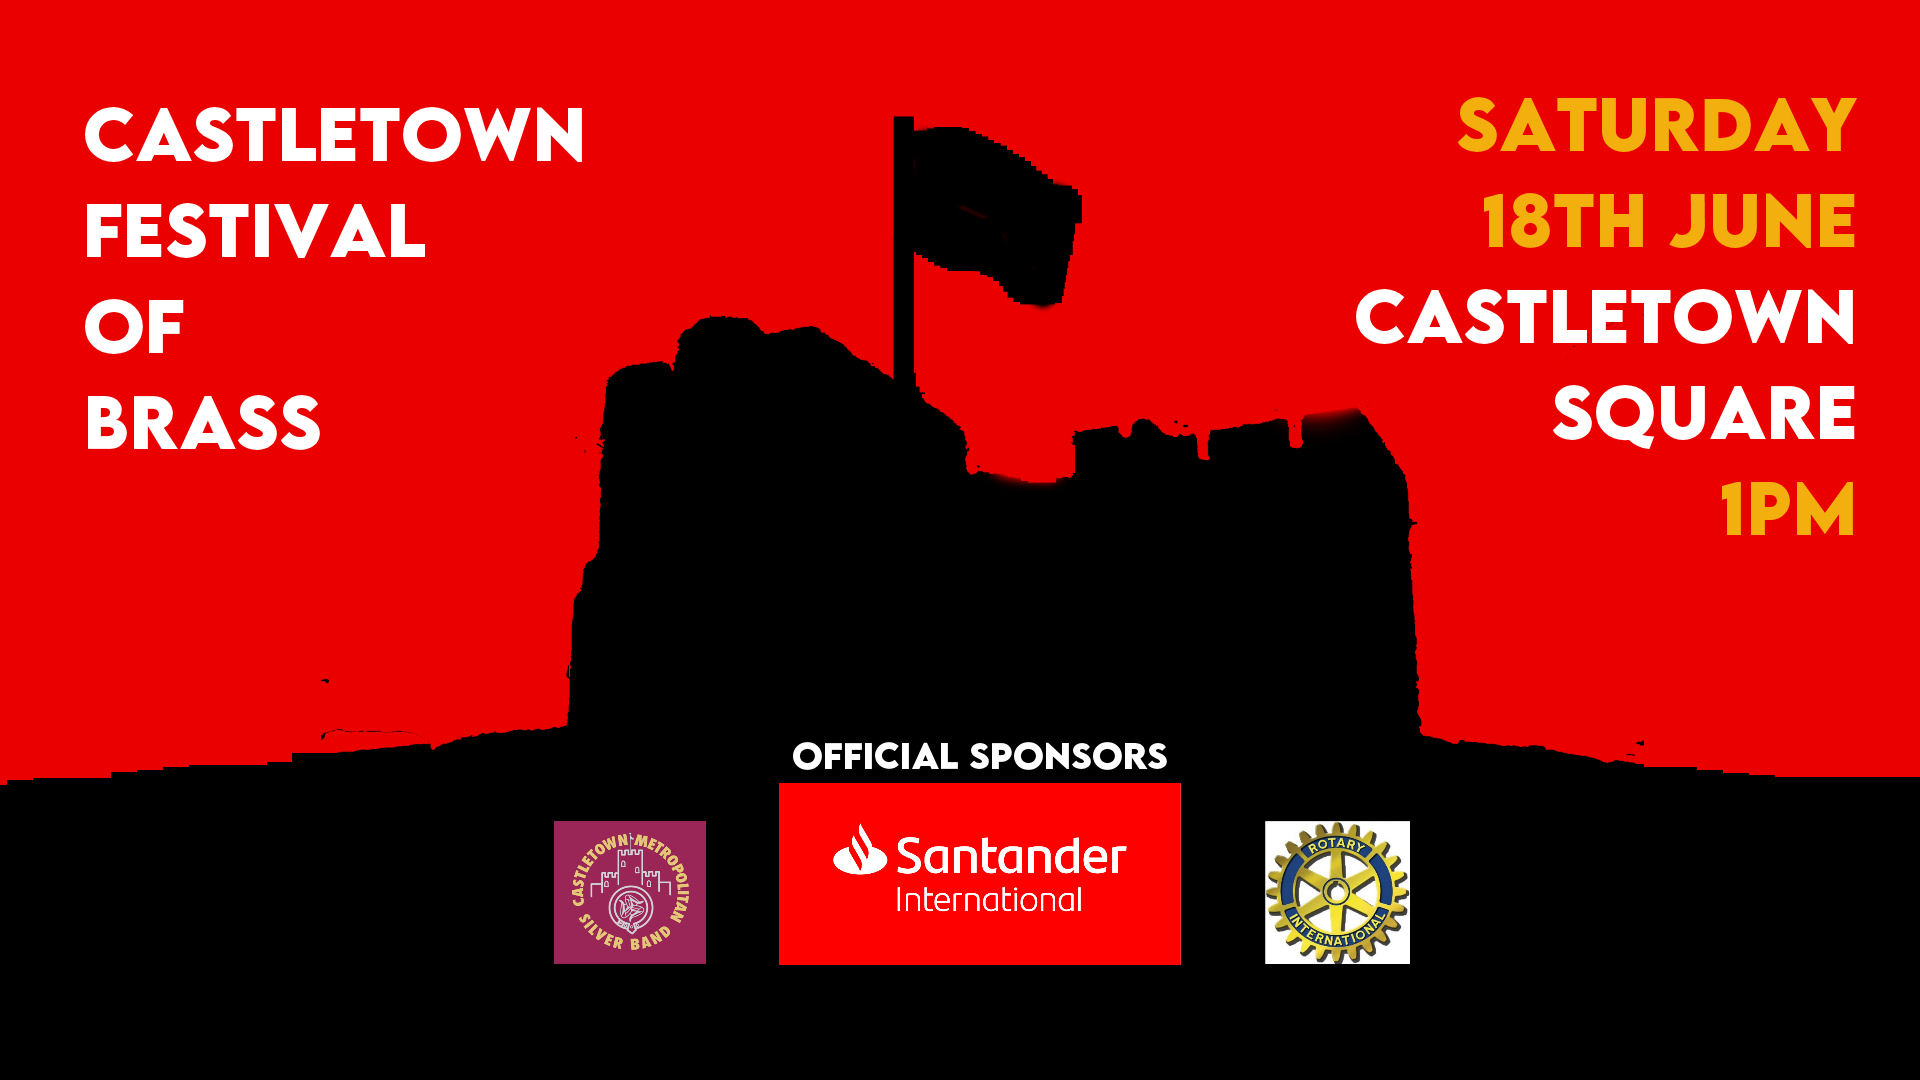 Castletown Festival poster